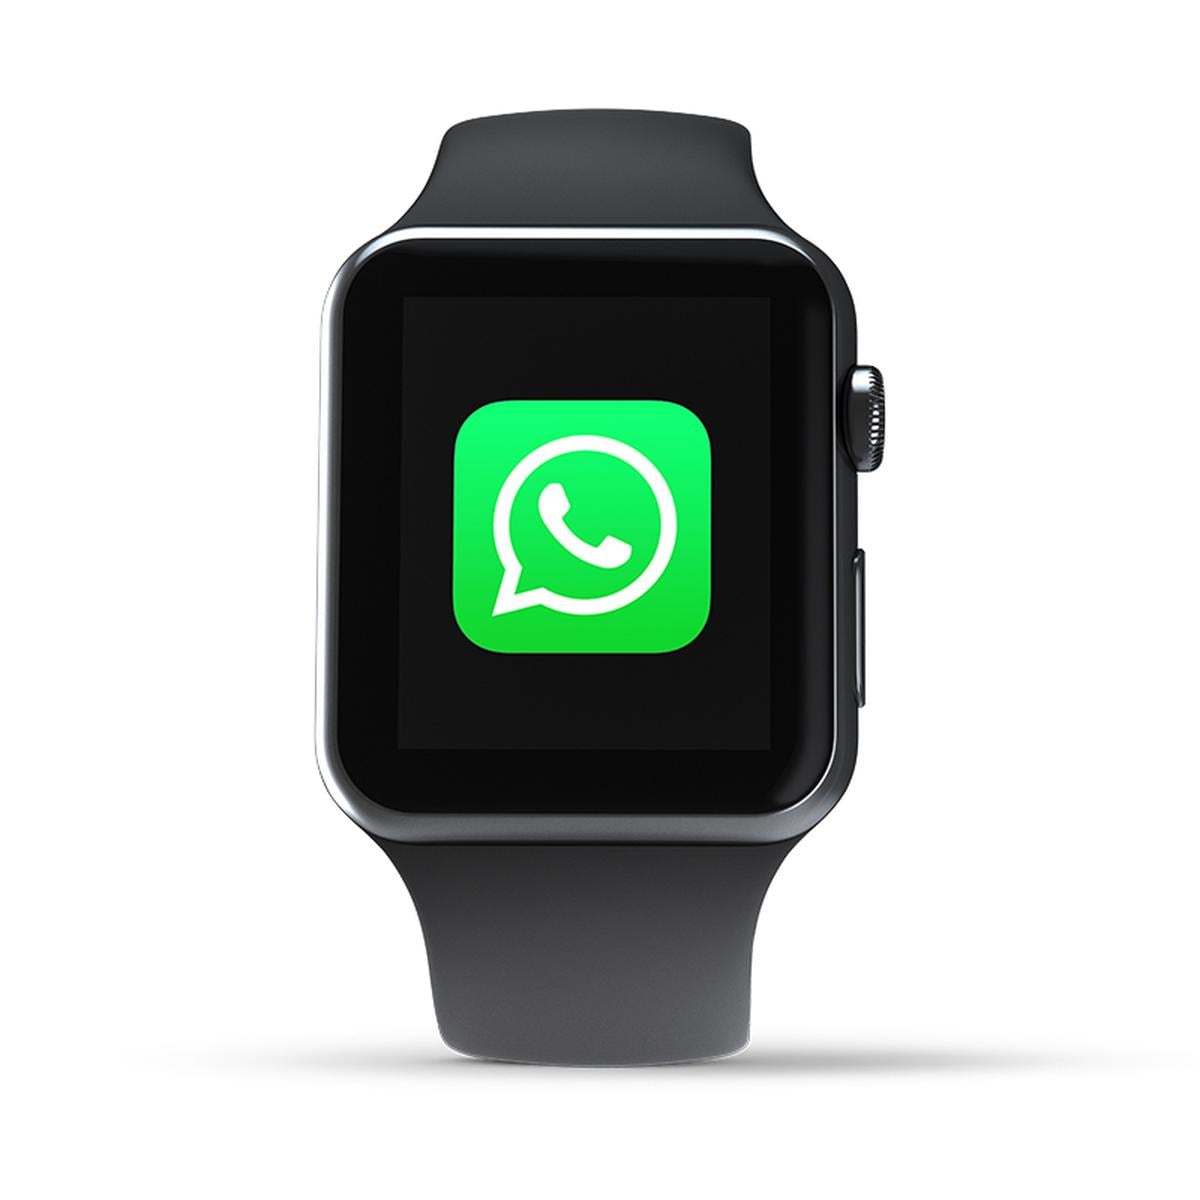 WhatsApp, Cómo ver y responder tus conversaciones en Apple Watch, Aplicaciones, Reloj inteligente, Smartphone, nnda, nnni, DATA